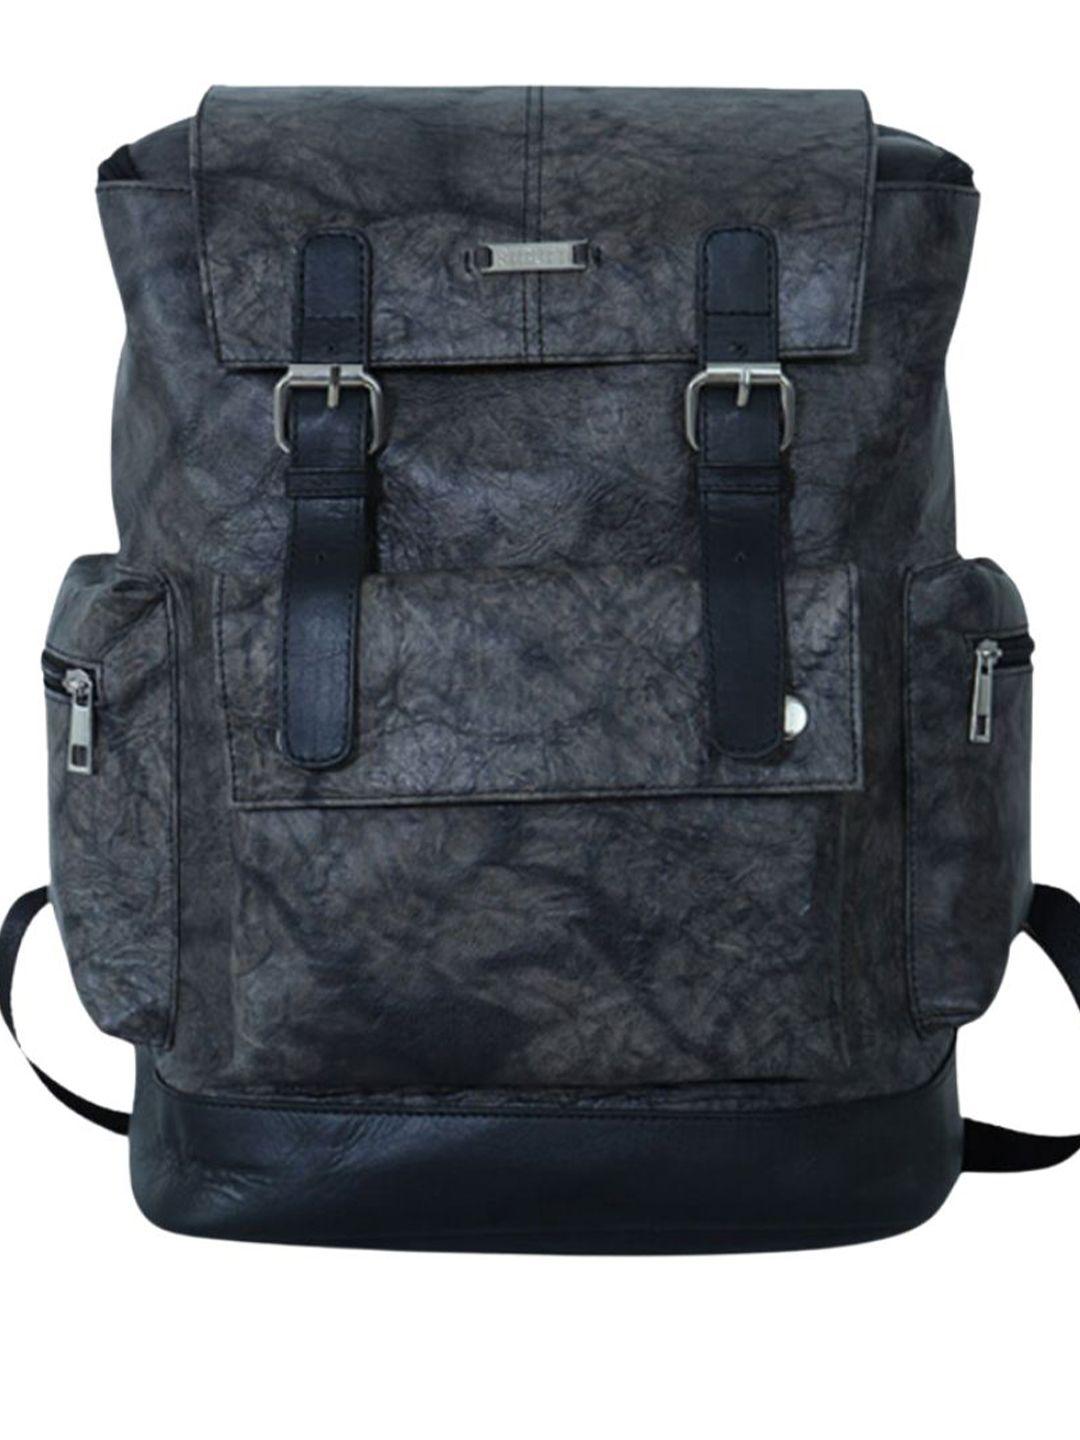 strutt unisex leather backpack